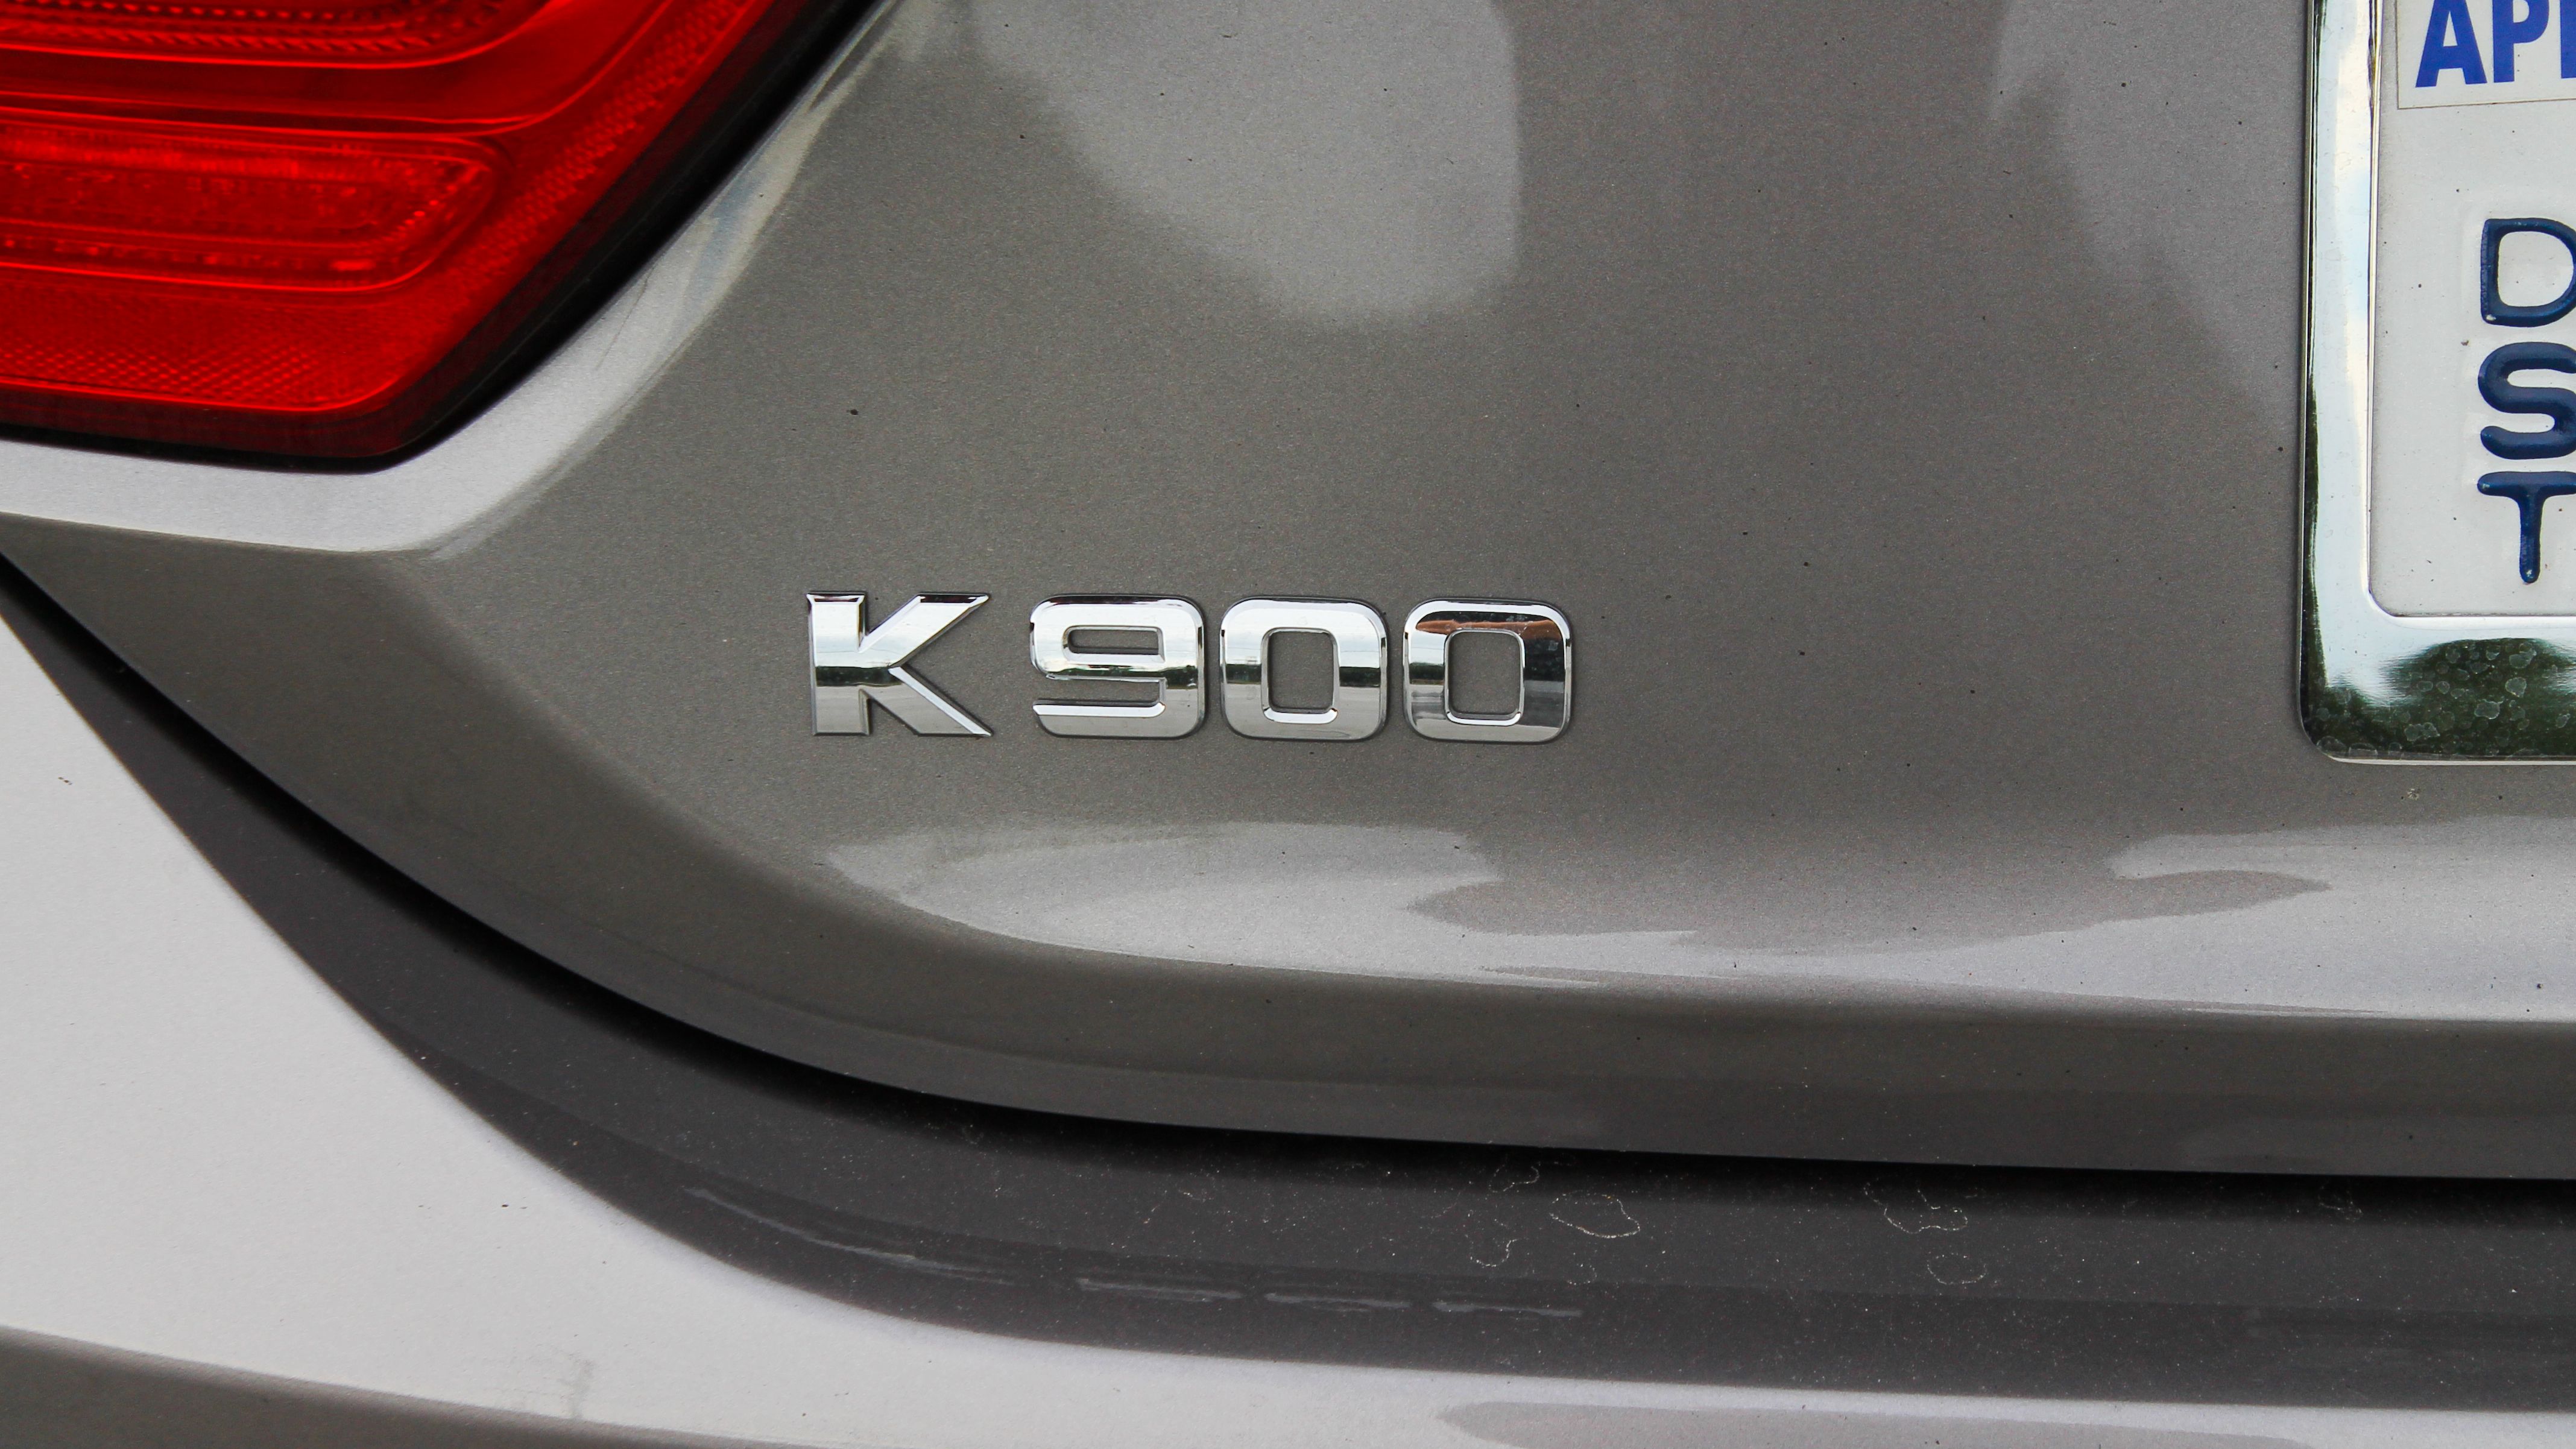 2015 Kia K900 - Driven